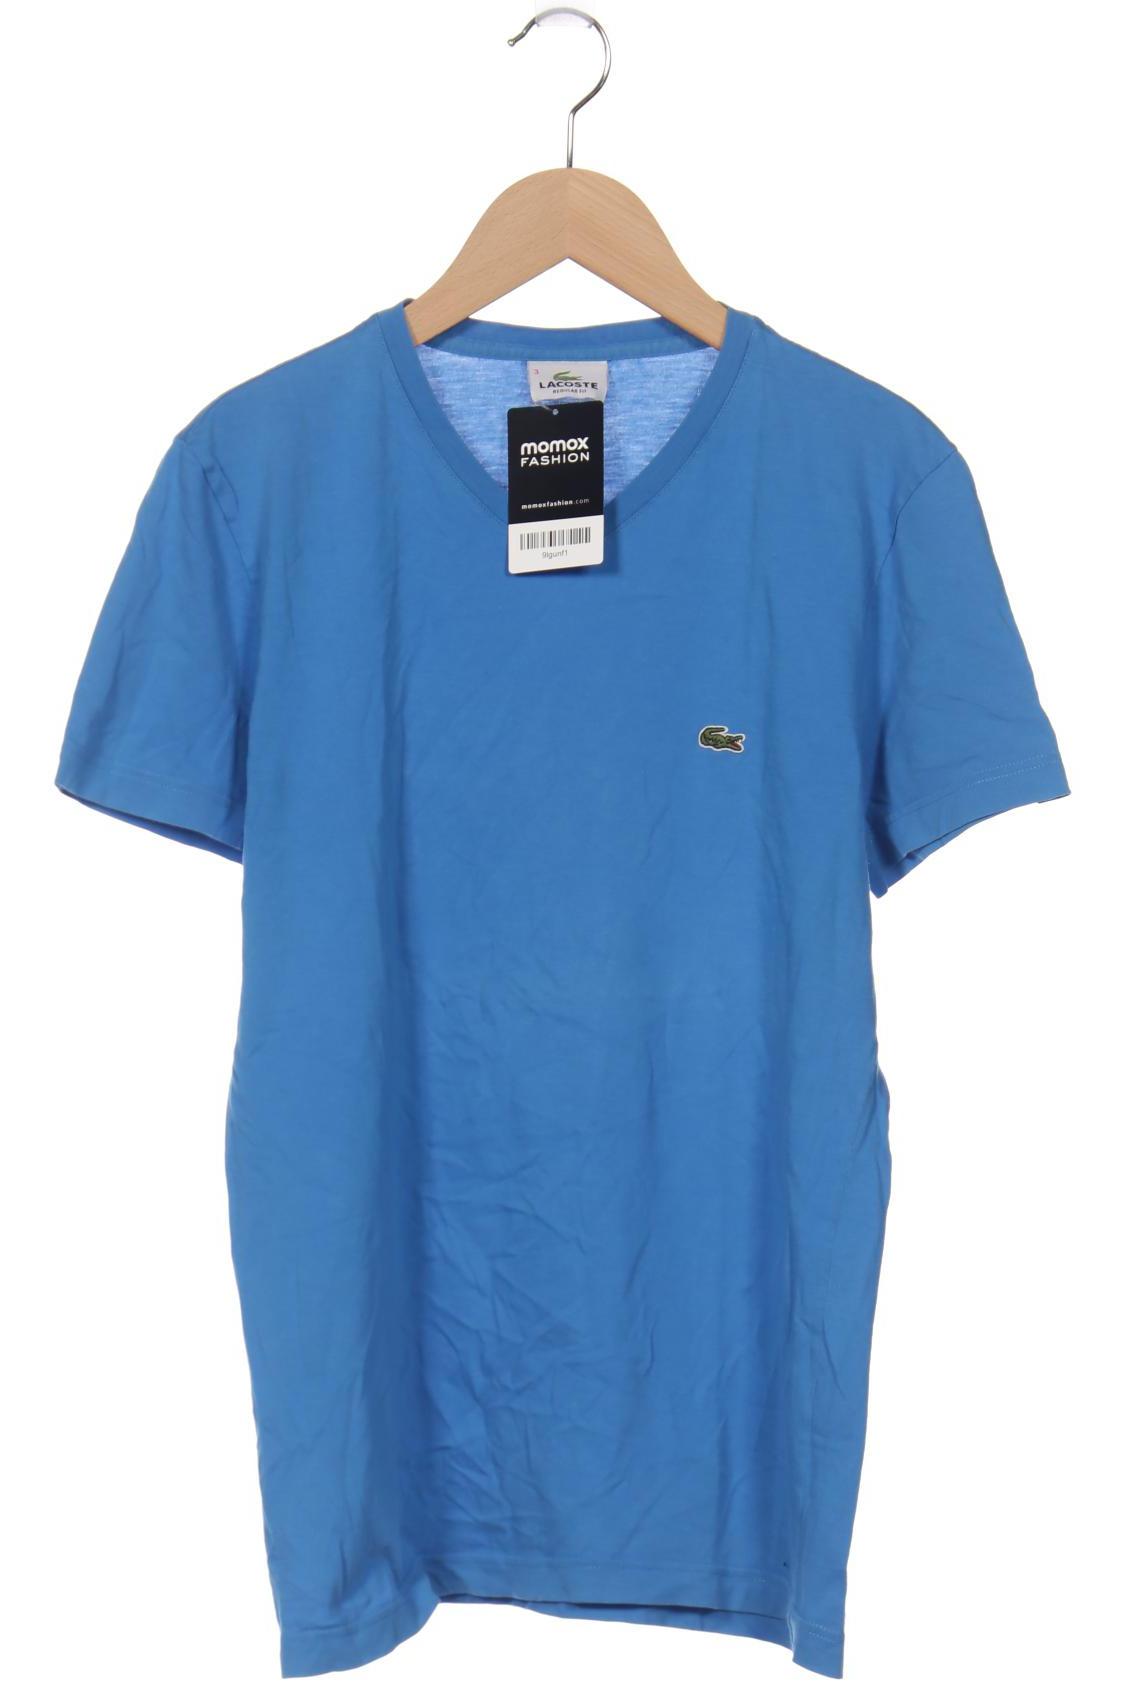 Lacoste Herren T-Shirt, blau, Gr. 46 von Lacoste